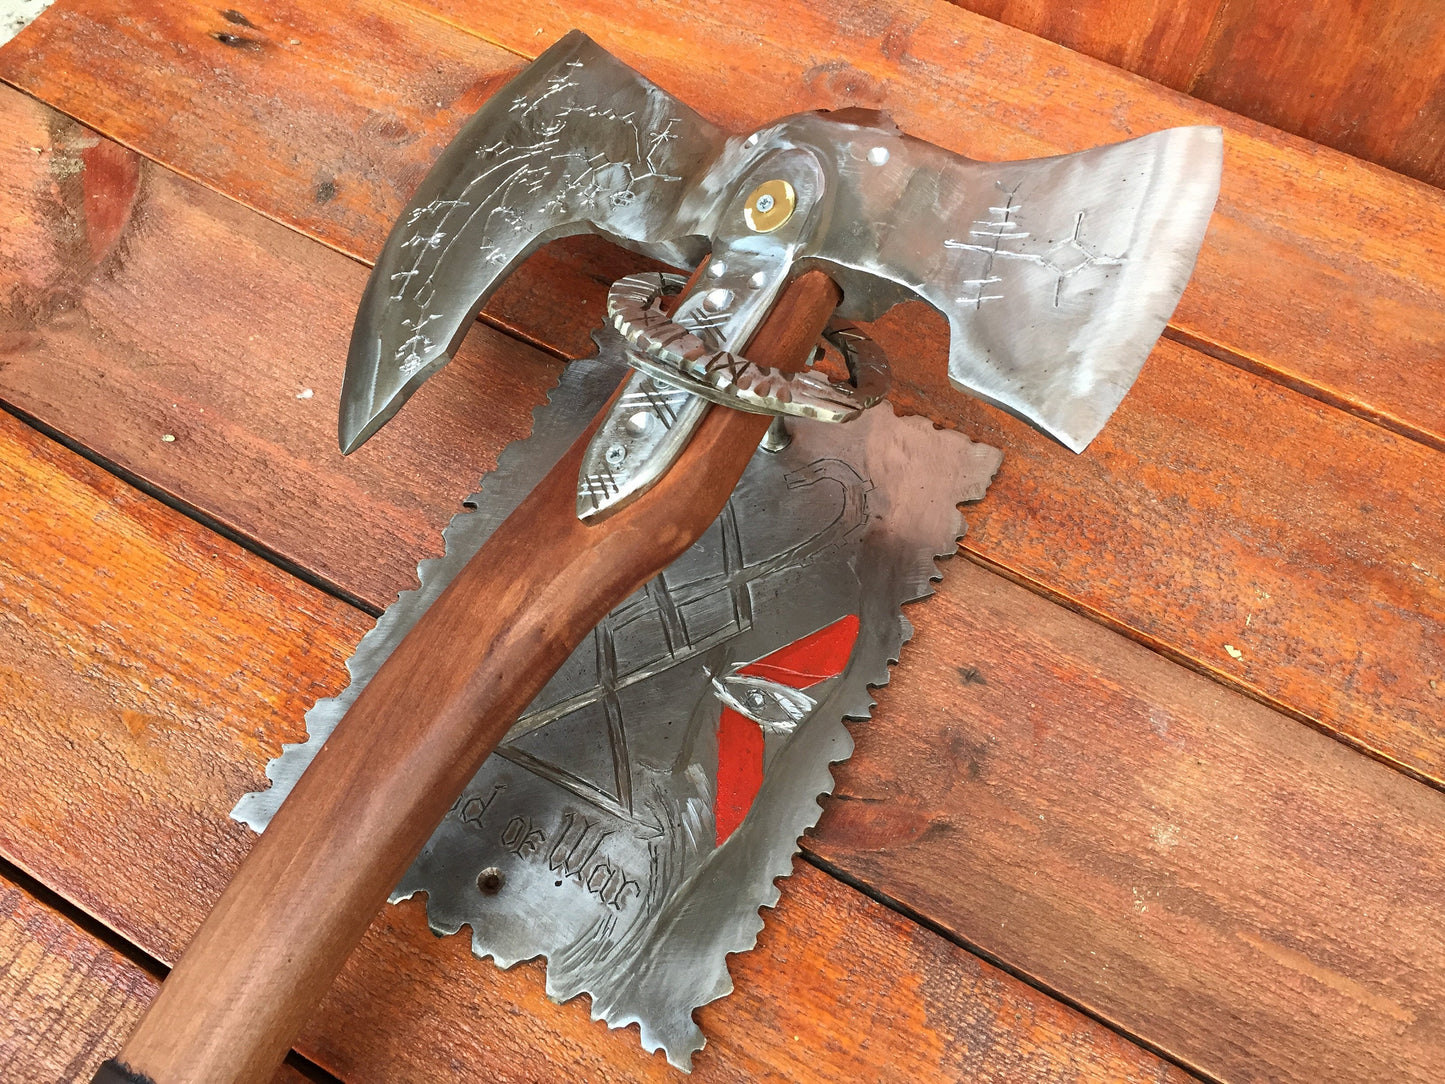 Axe holder, axe stand, Leviathan axe, God of War axe, Kratos axe, cosplay, viking axe, mens gifts, medieval axe, tomahawk, God of War decor